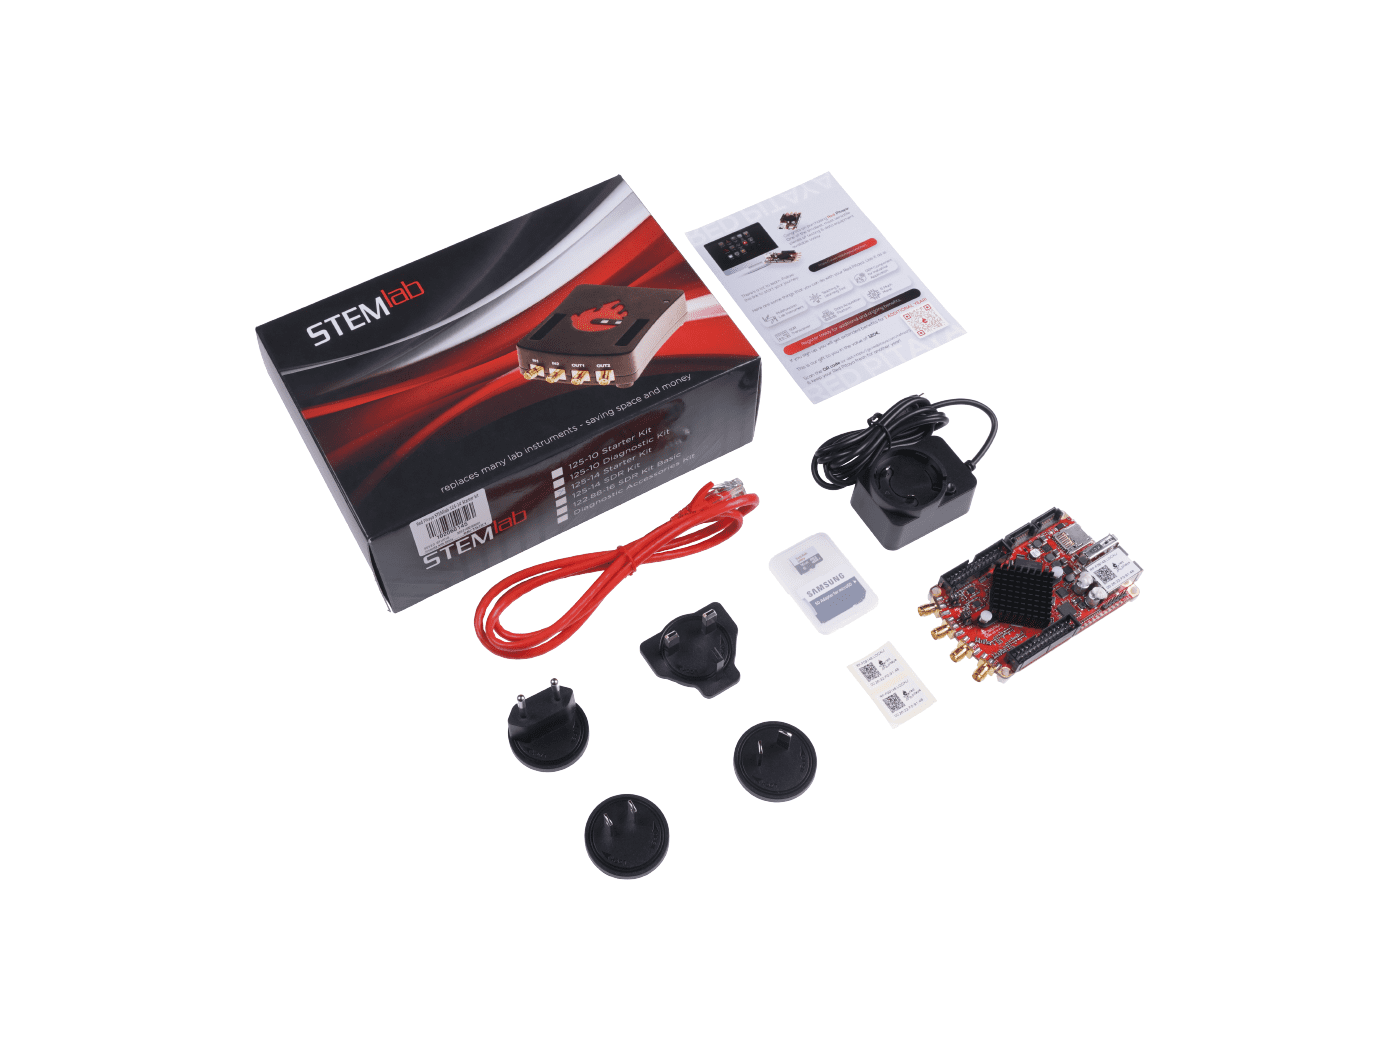 Red Pitaya STEMlab 125-14 Starter Kit